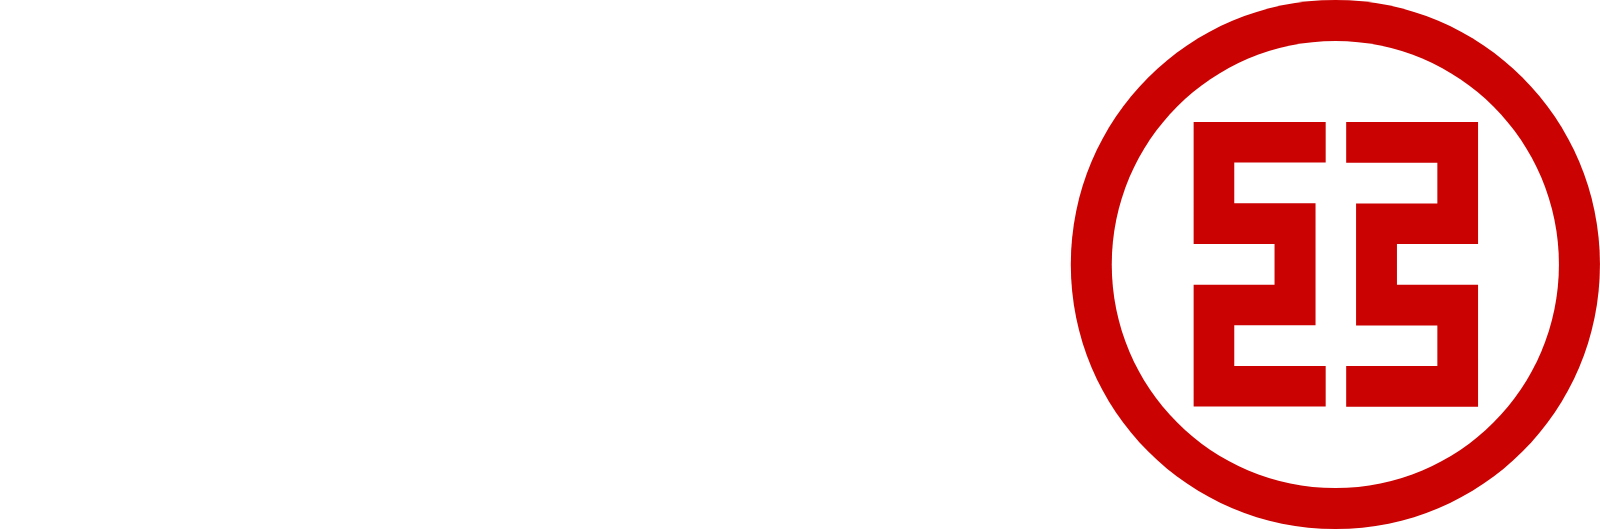 ICBC Logo groß für dunkle Hintergründe (transparentes PNG)